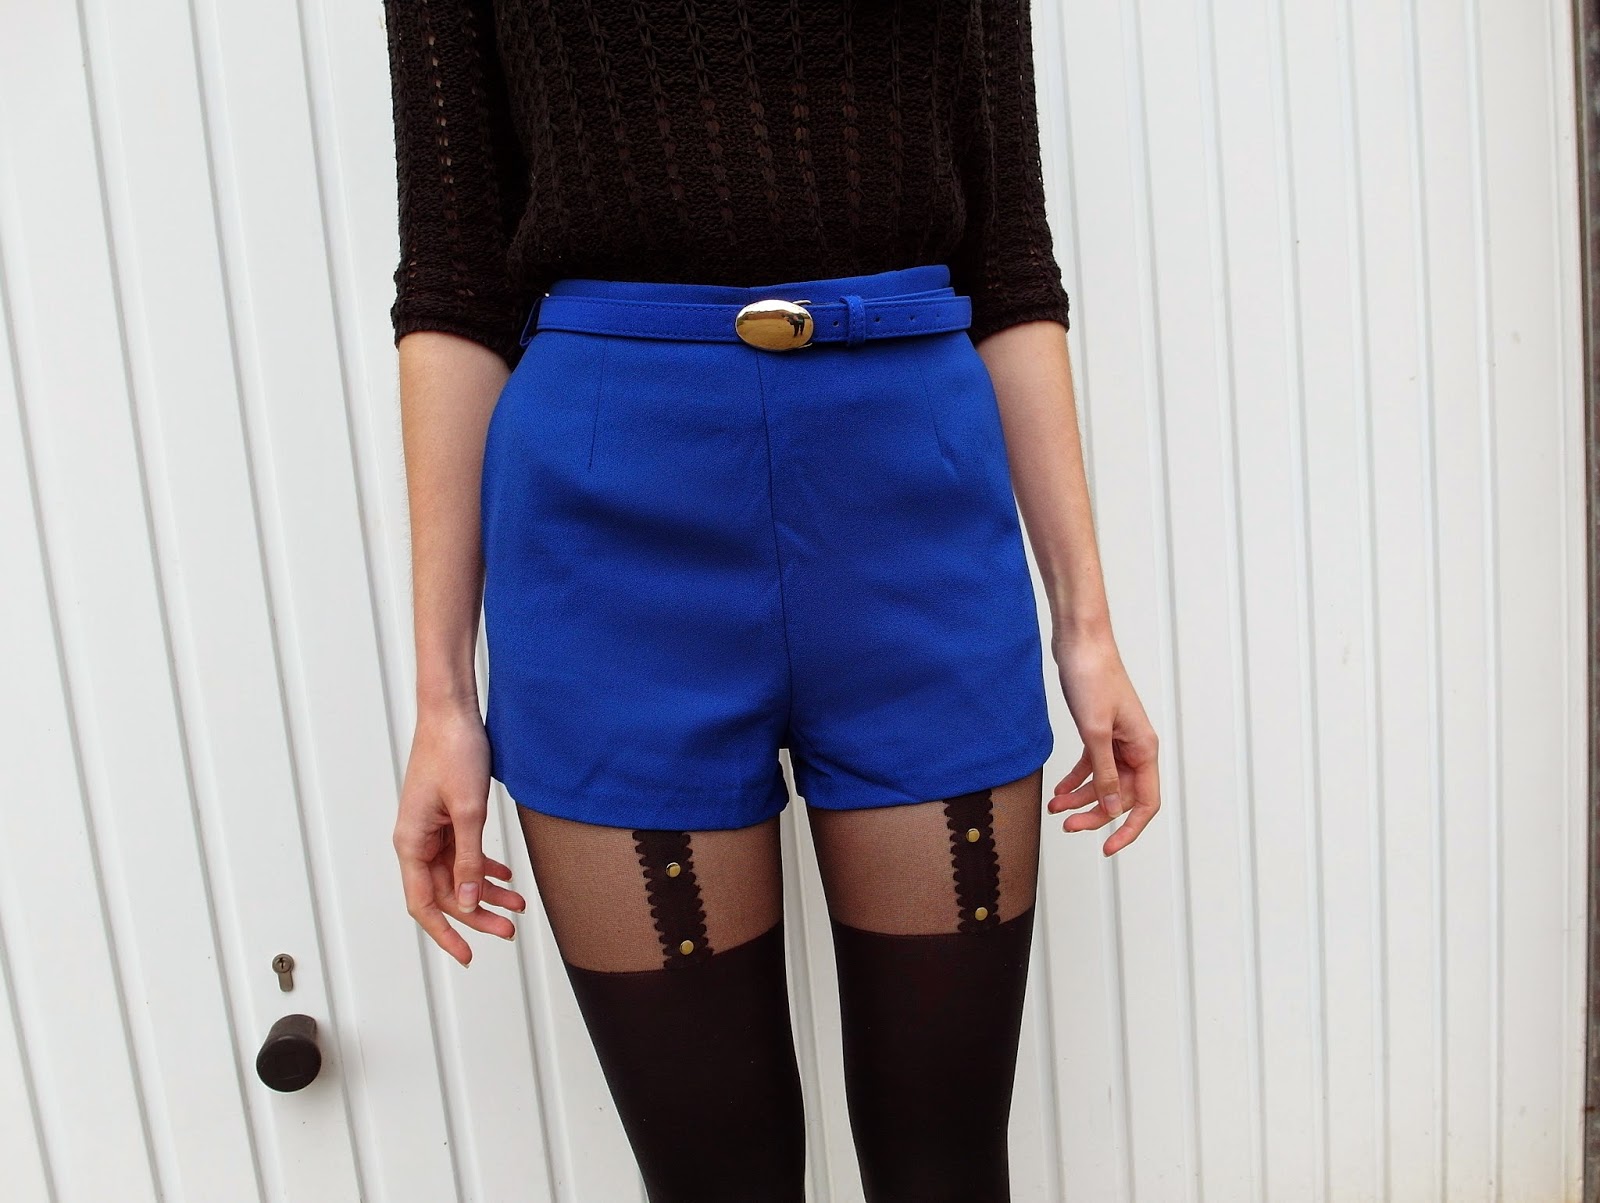 Blauwe shorts met panty eronder Kenzaa webshop Primark sandalen overknee sokken outfit inspiratie